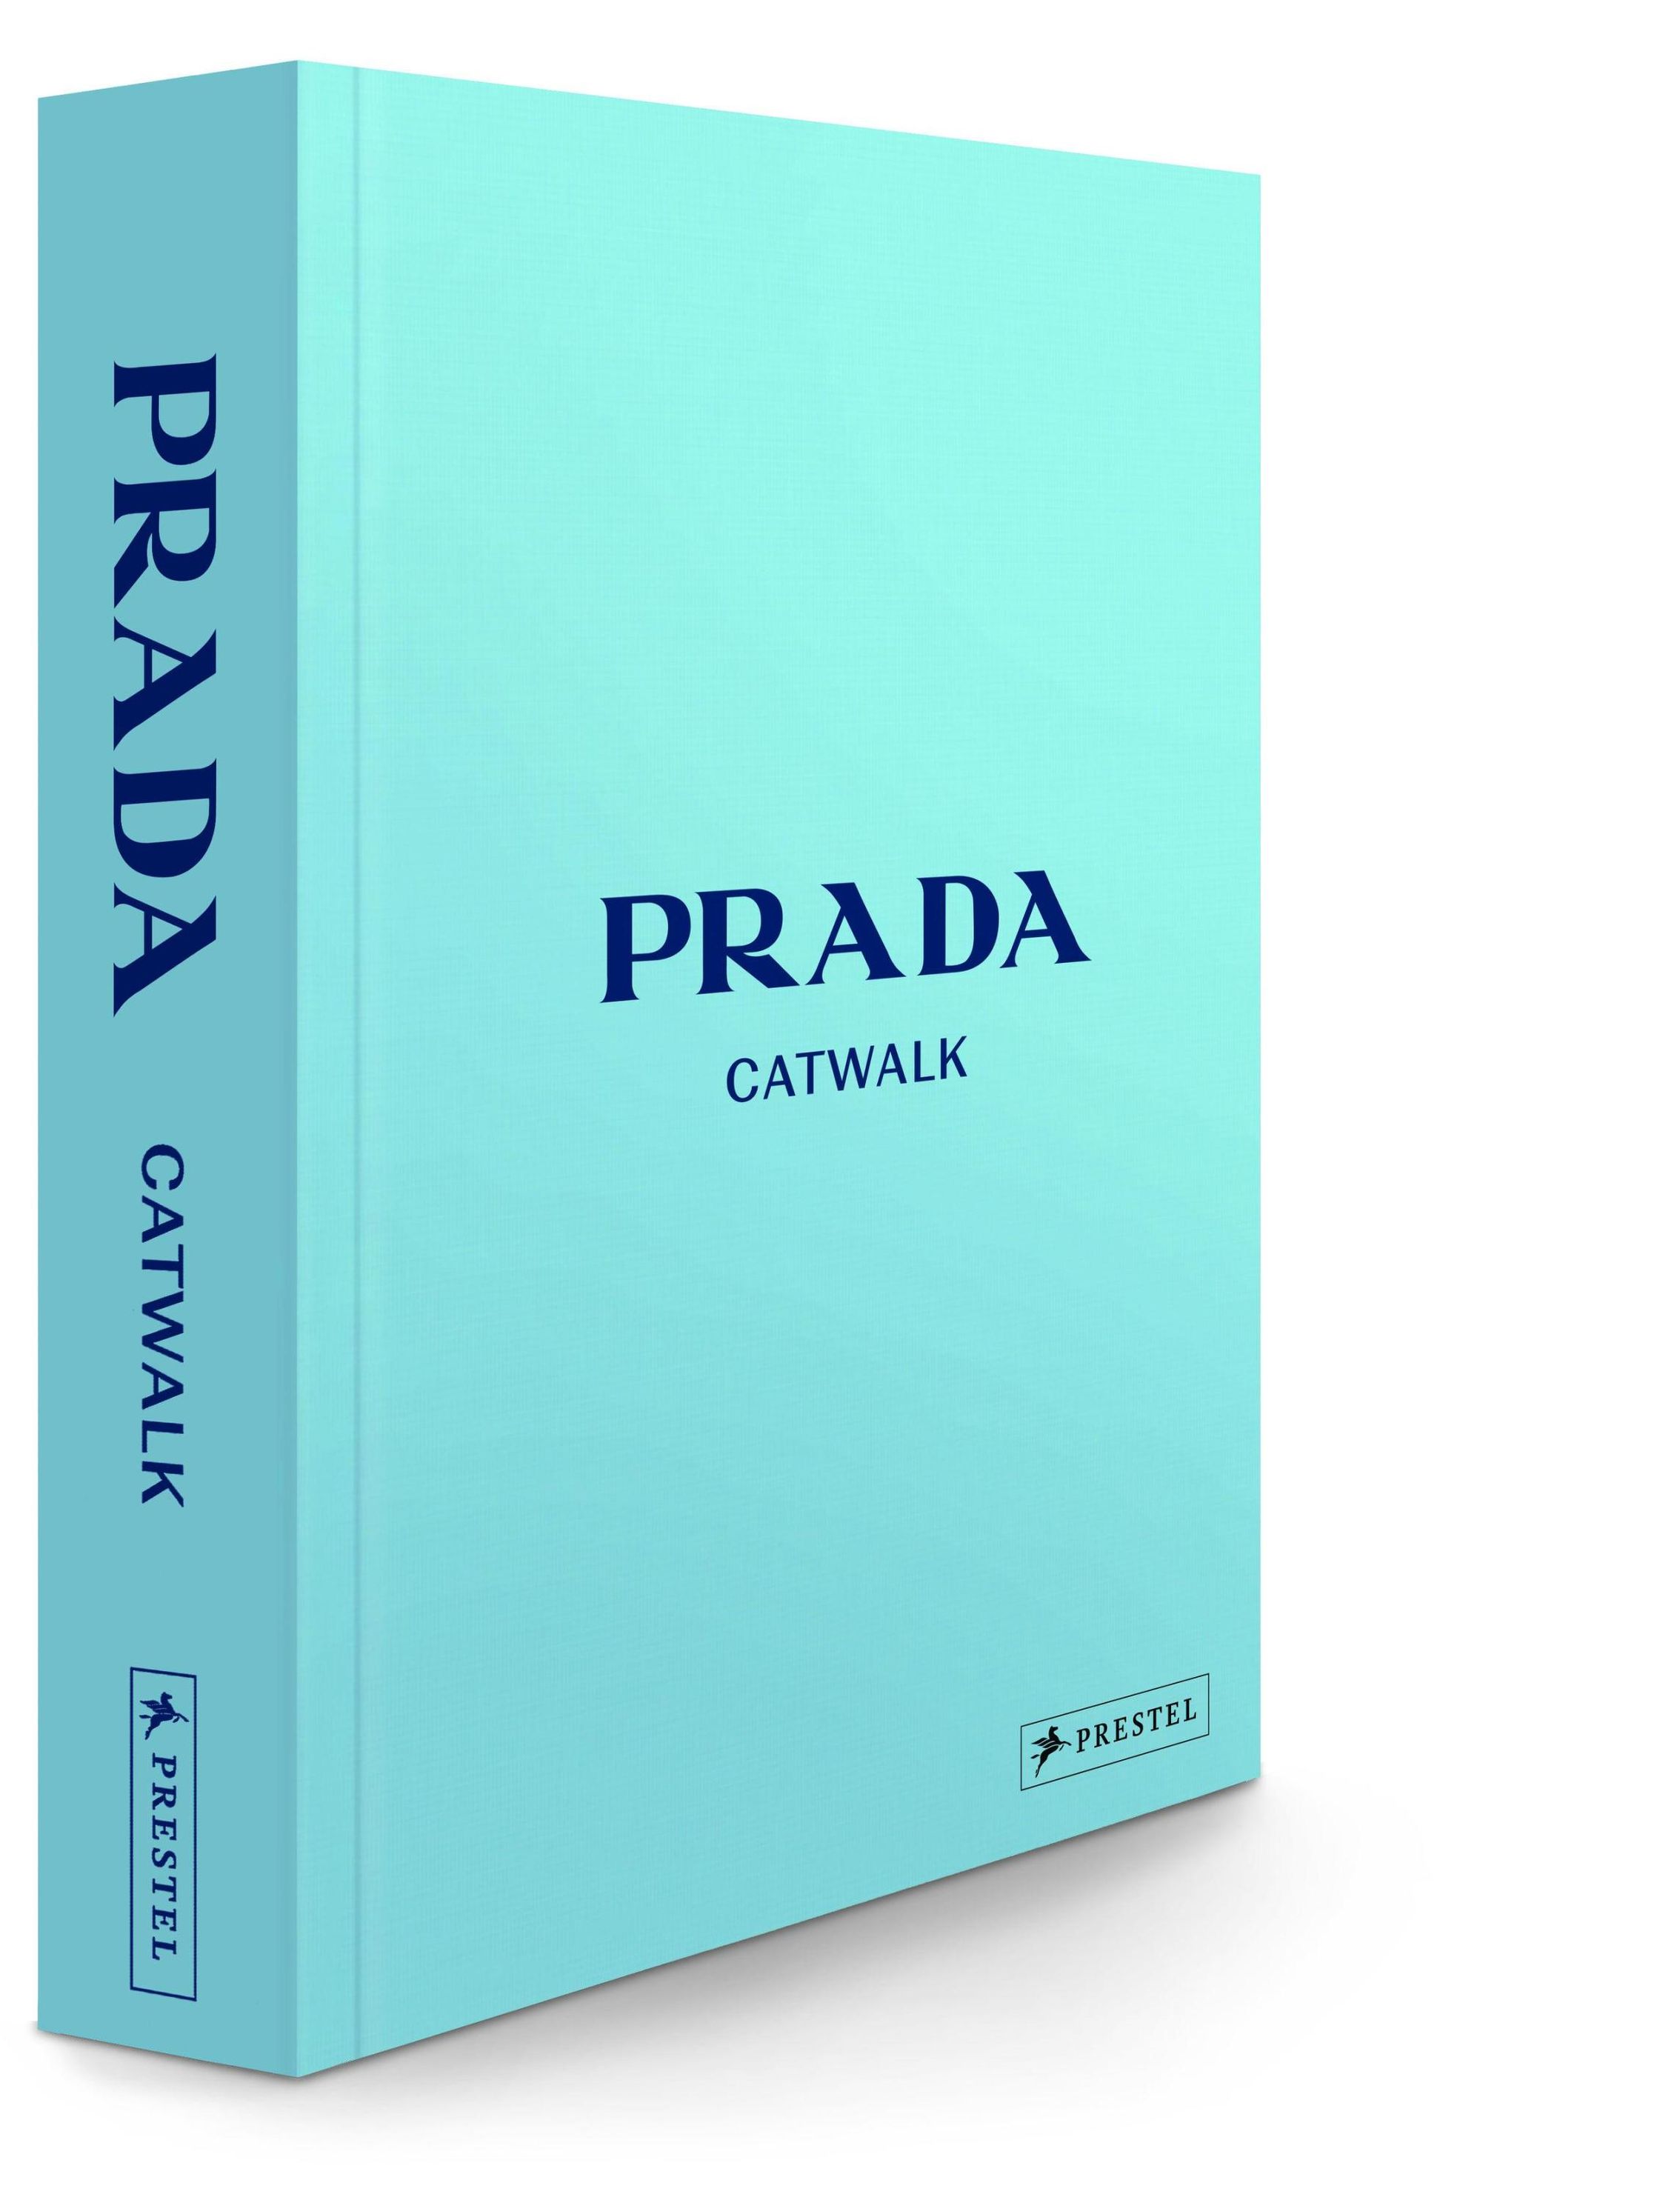 Prada Catwalk - Die Kollektionen Buch versandkostenfrei bei Weltbild.ch